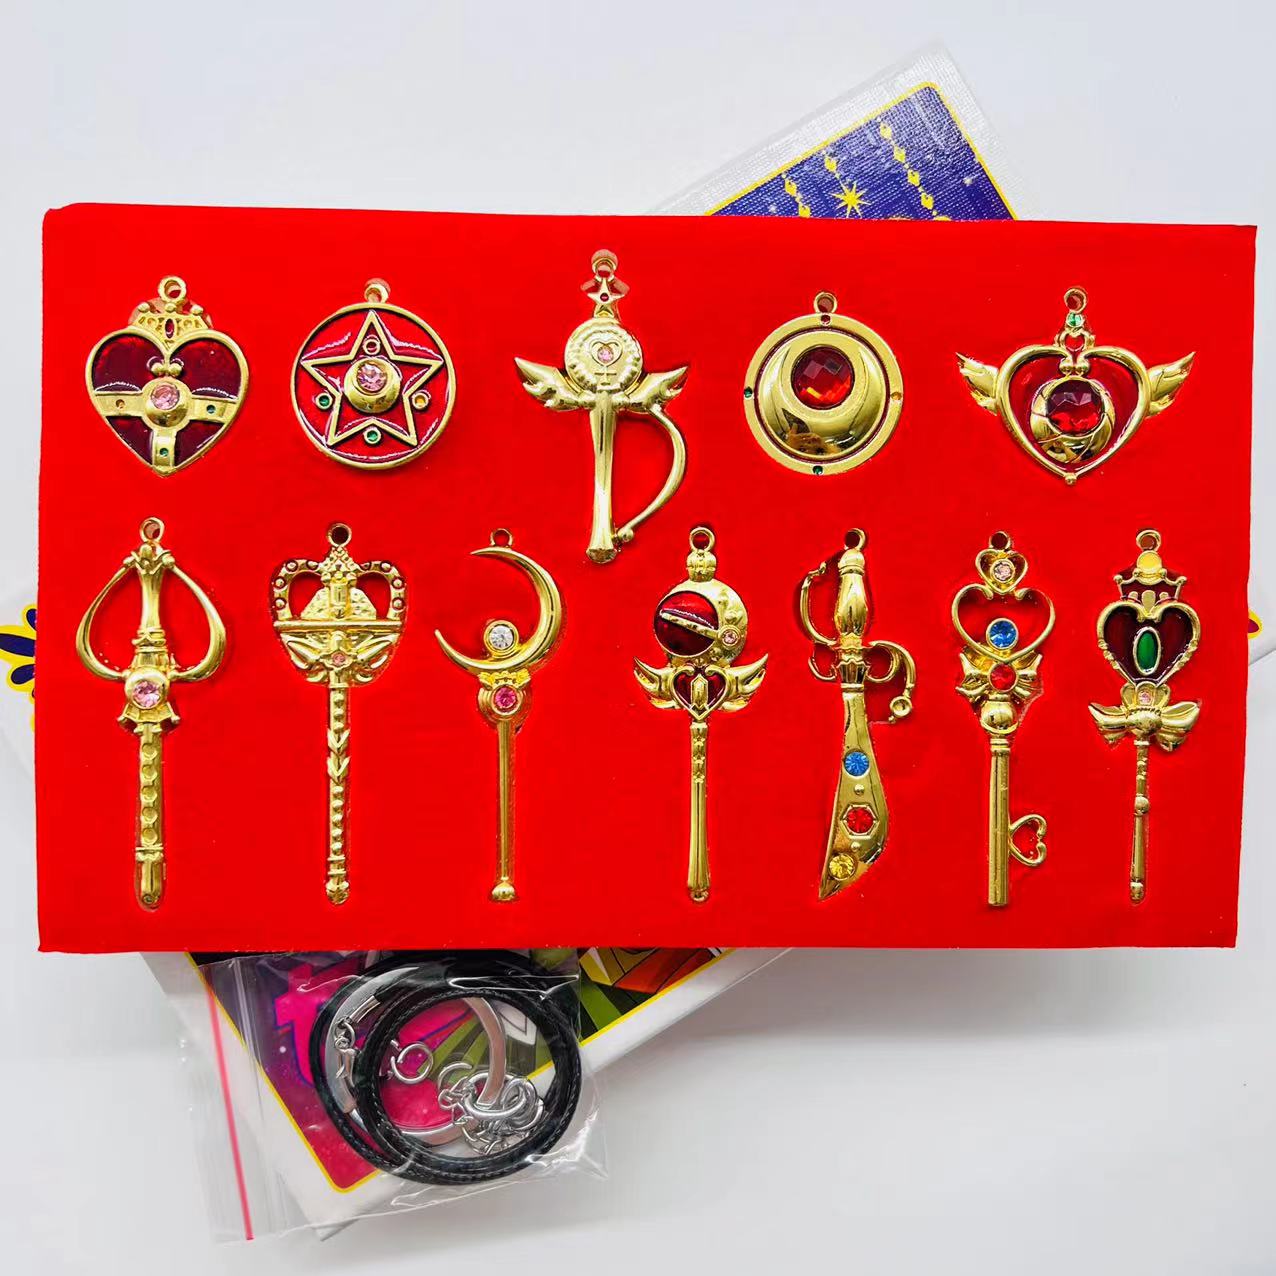 Sailor Moon Crystal anime Keychain price for a set